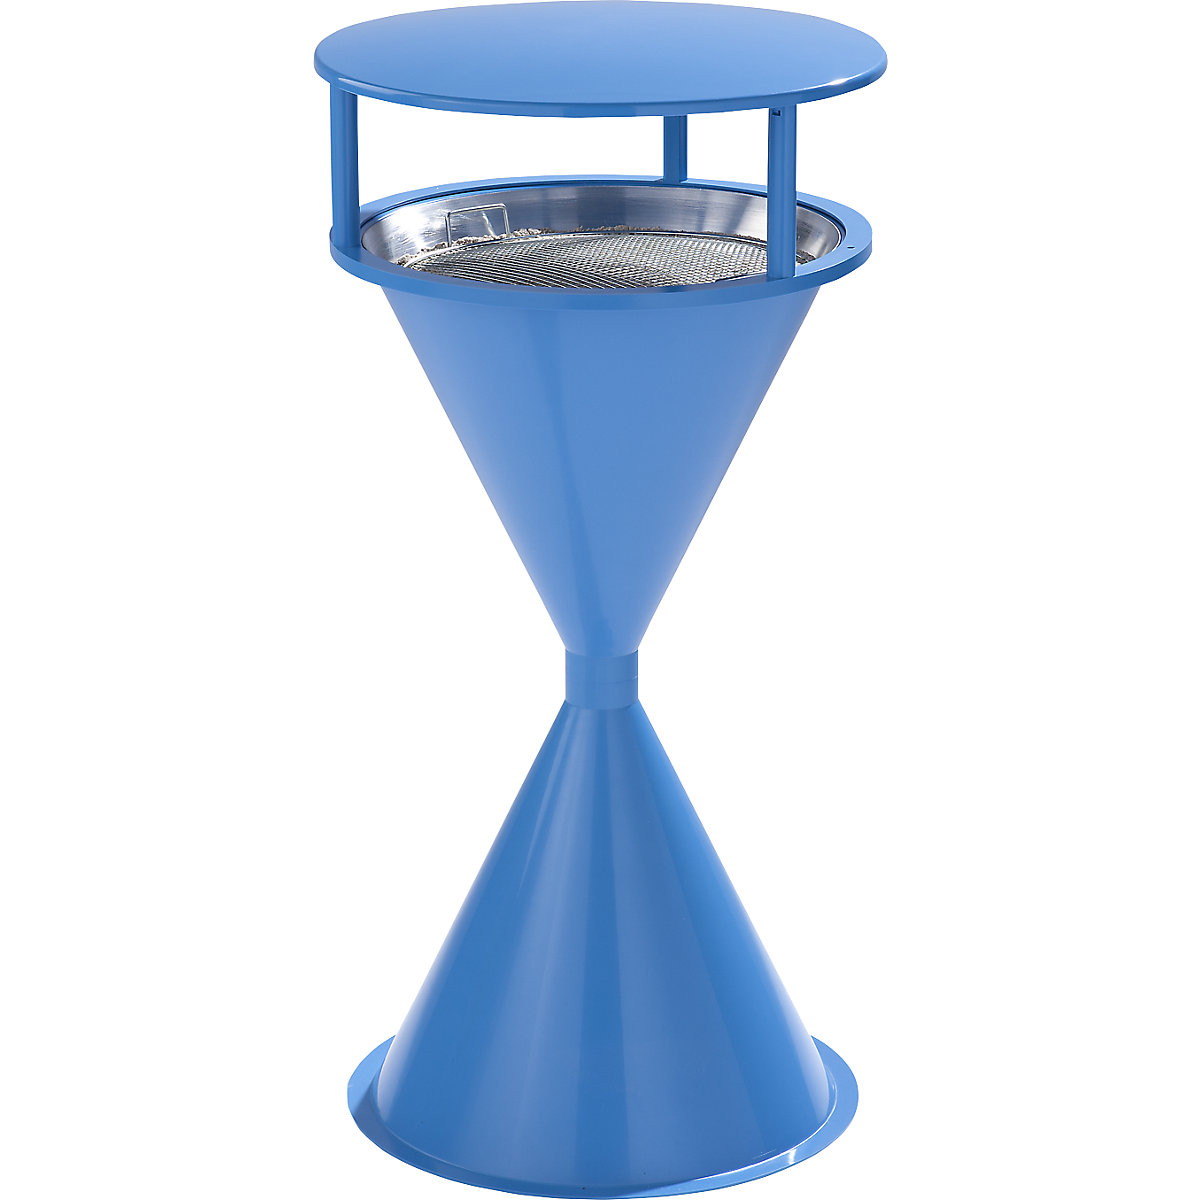 VAR – Cendrier sur pied en forme de quille, en plastique, avec toit, bleu clair